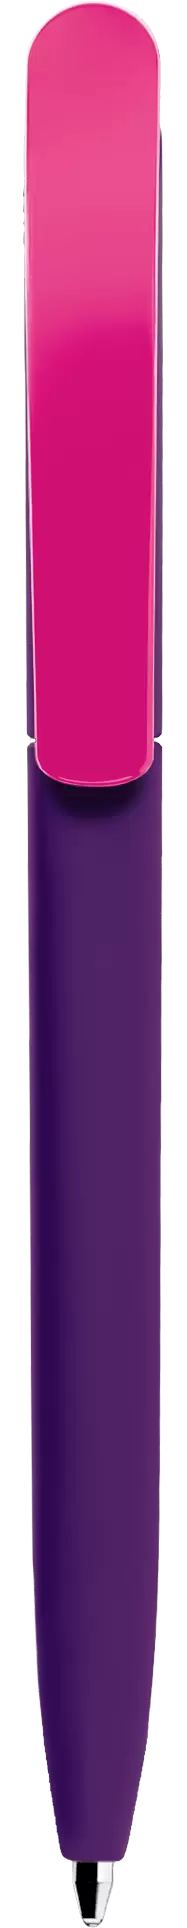 Ручка VIVALDI SOFT MIX Фиолетовая с розовым 1333-11-10